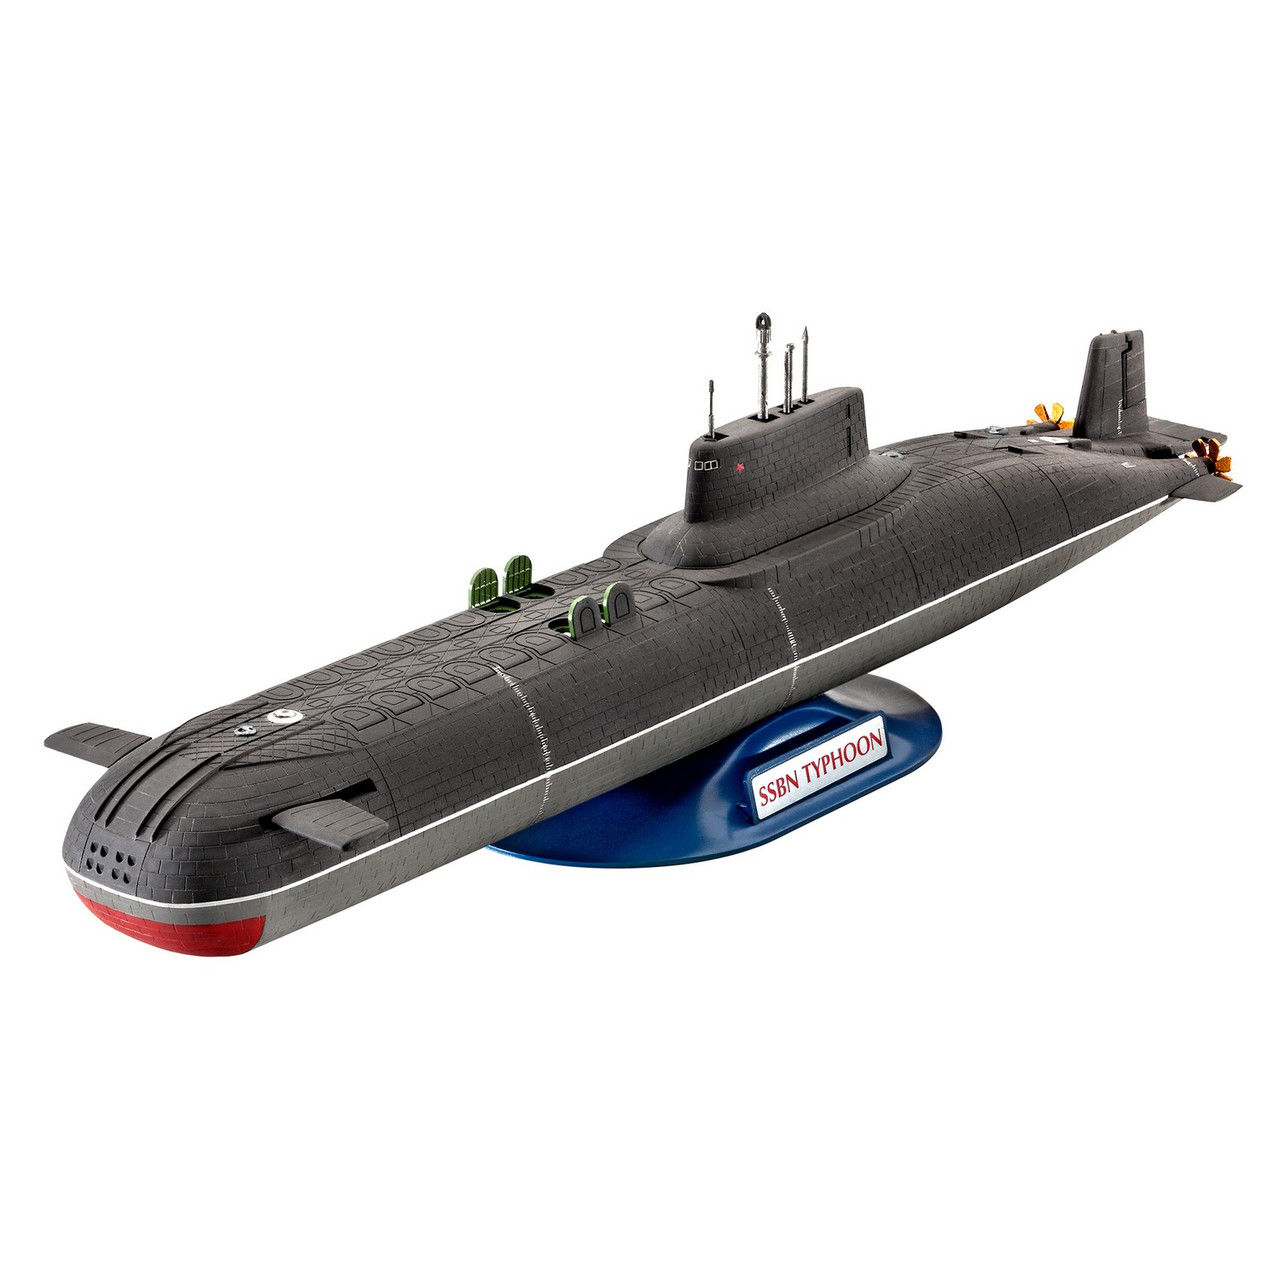 Радиоуправляемые подводные лодки, выбрать, купить, доставка - магазин баштрен.рф